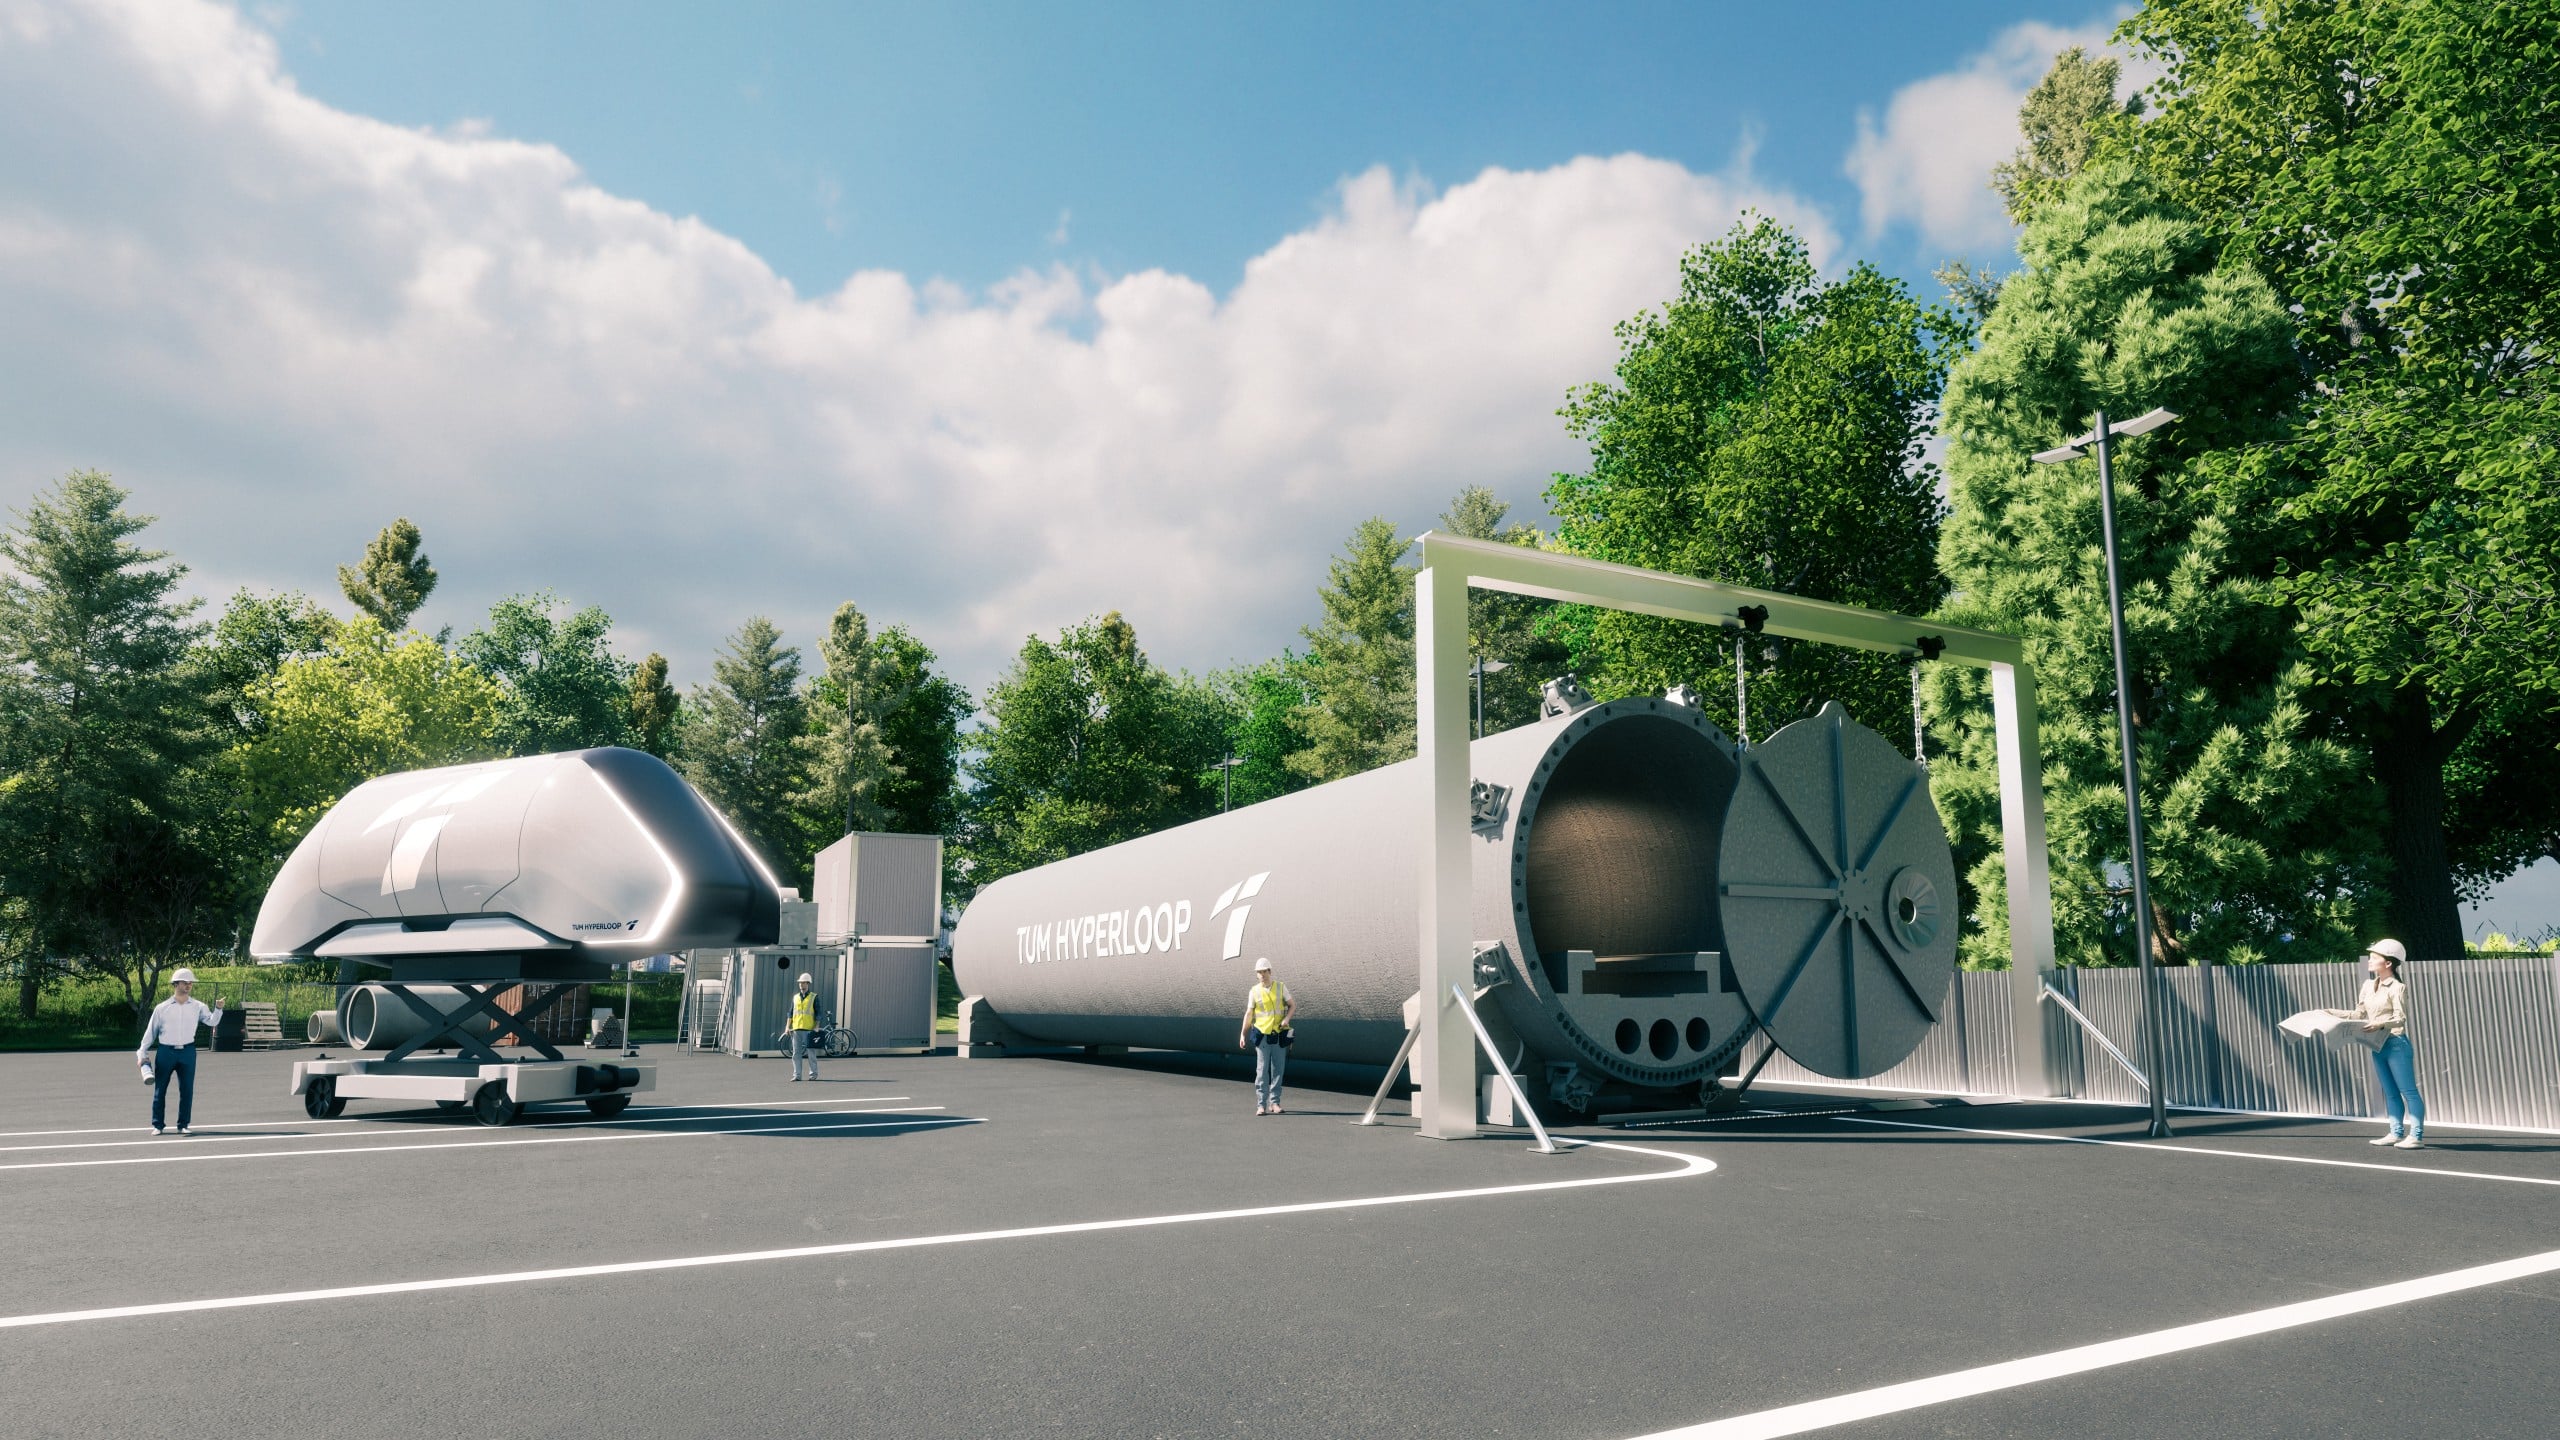 Der Hyperloop soll im fertigen Zustand bis zu 900 Kilometer pro Stunde erreichen - und dabei Güter und Menschen transportieren. © TUM 2023 Hyperloop